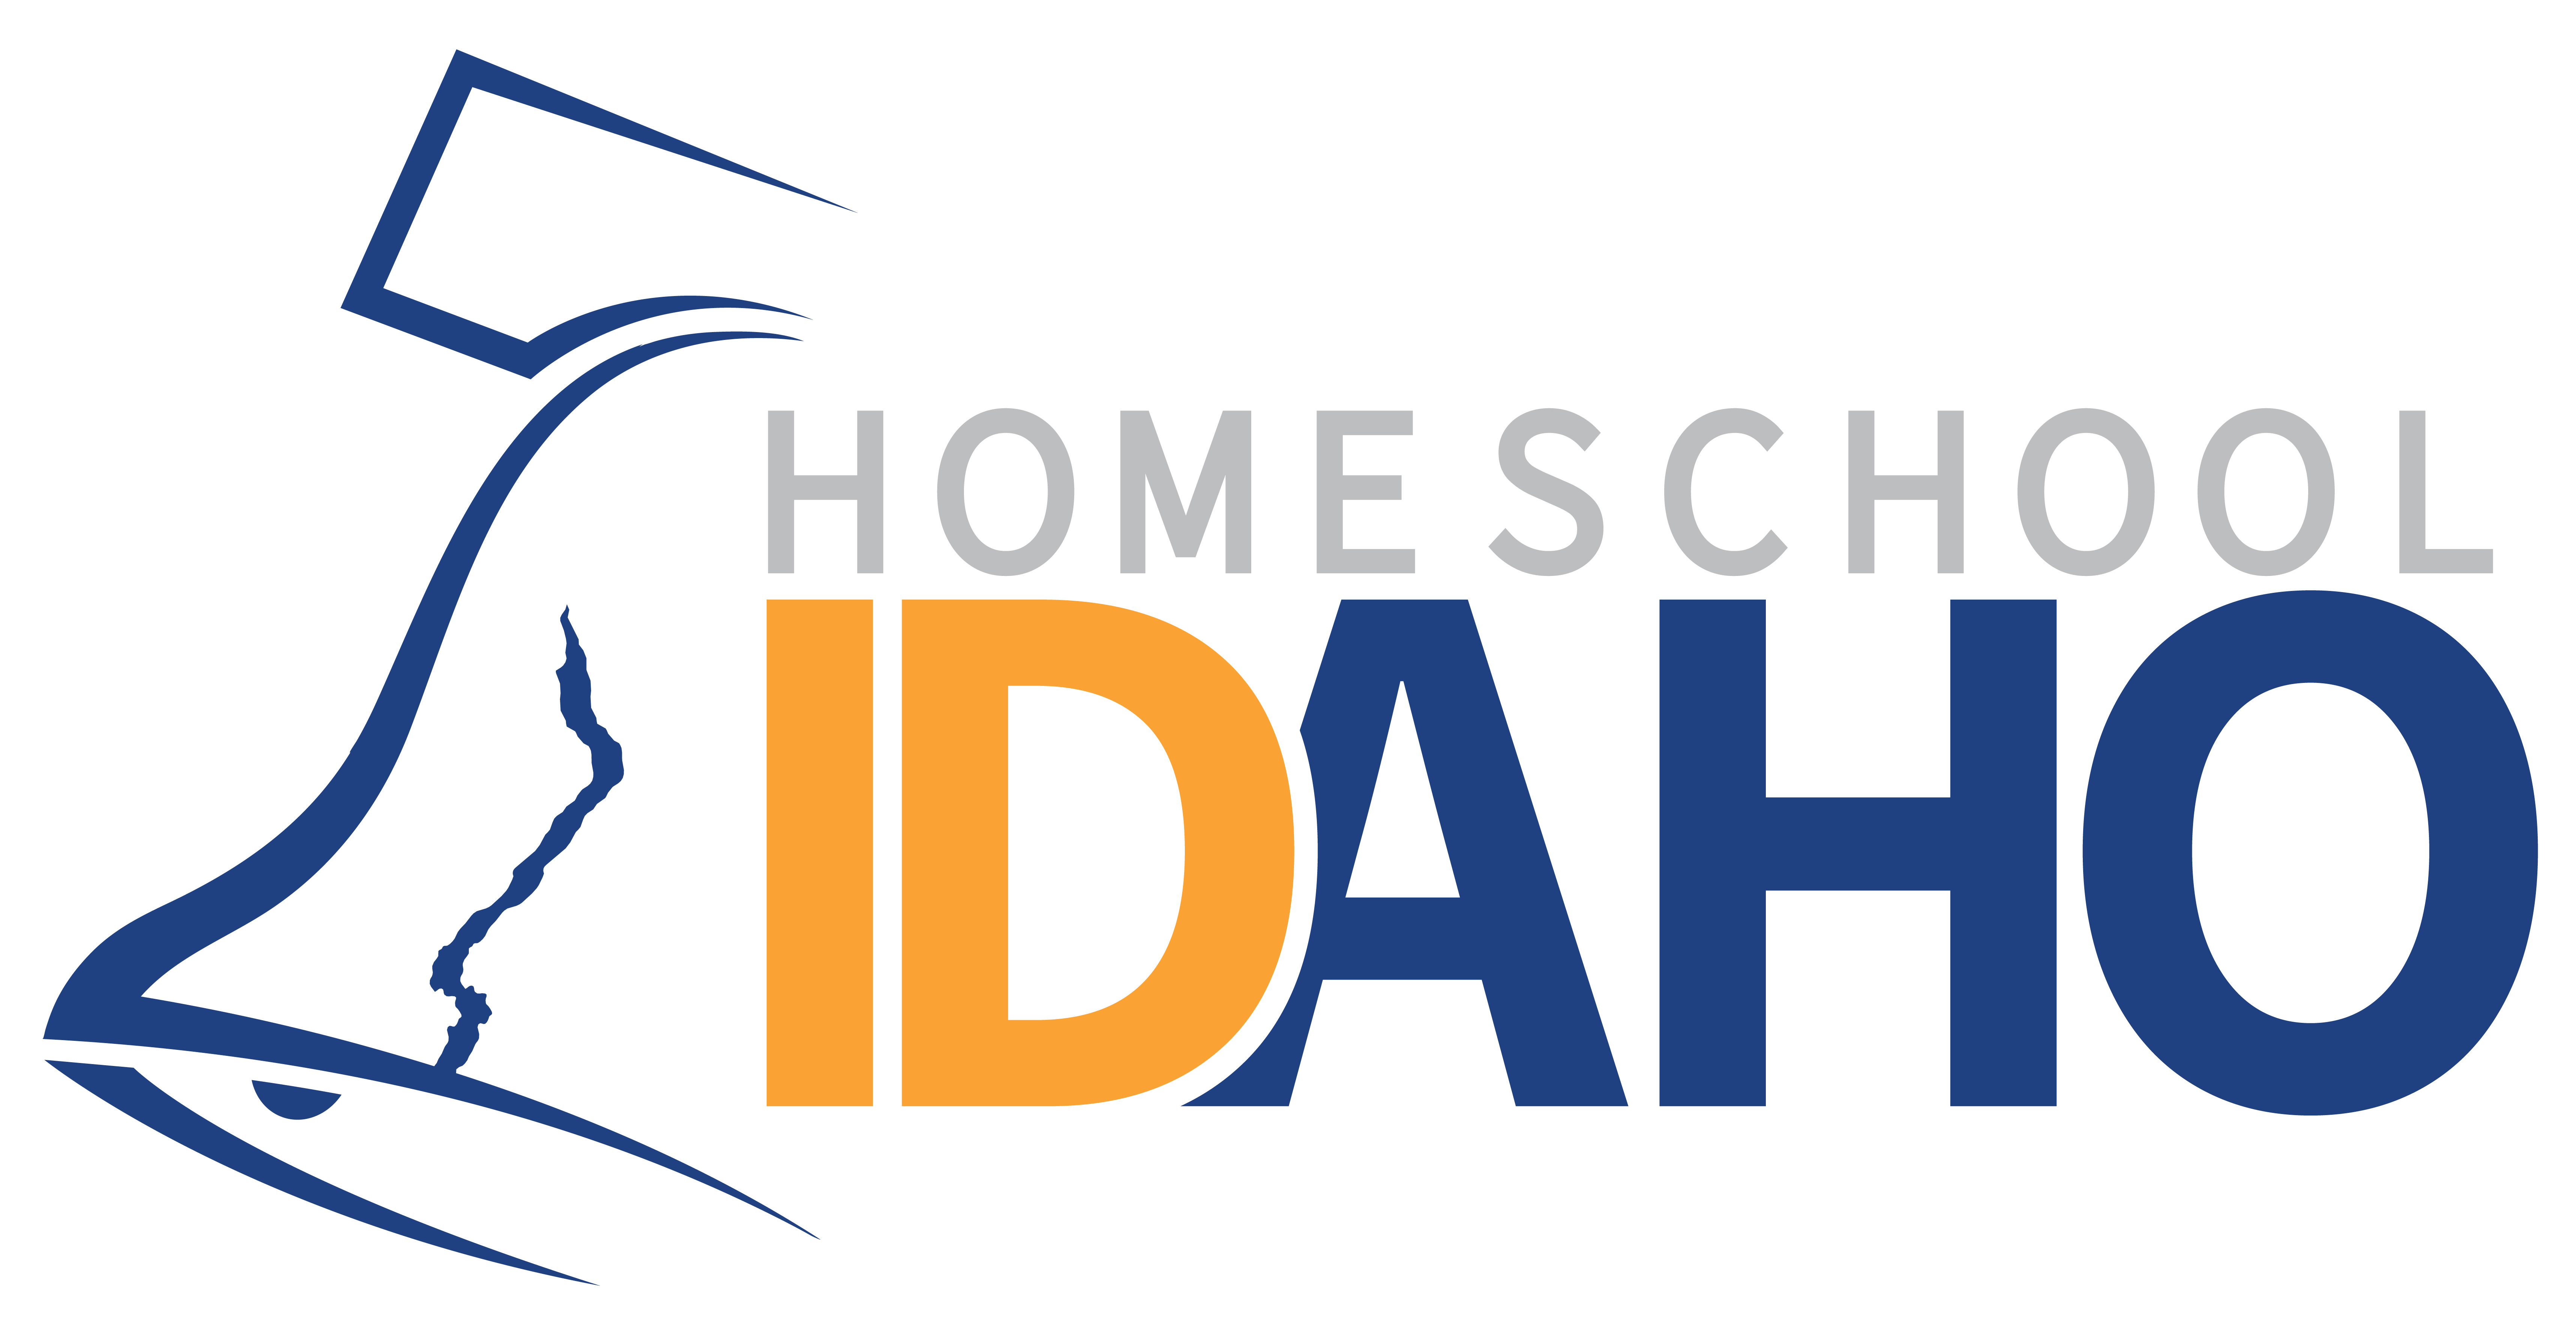 Homeschool Idaho